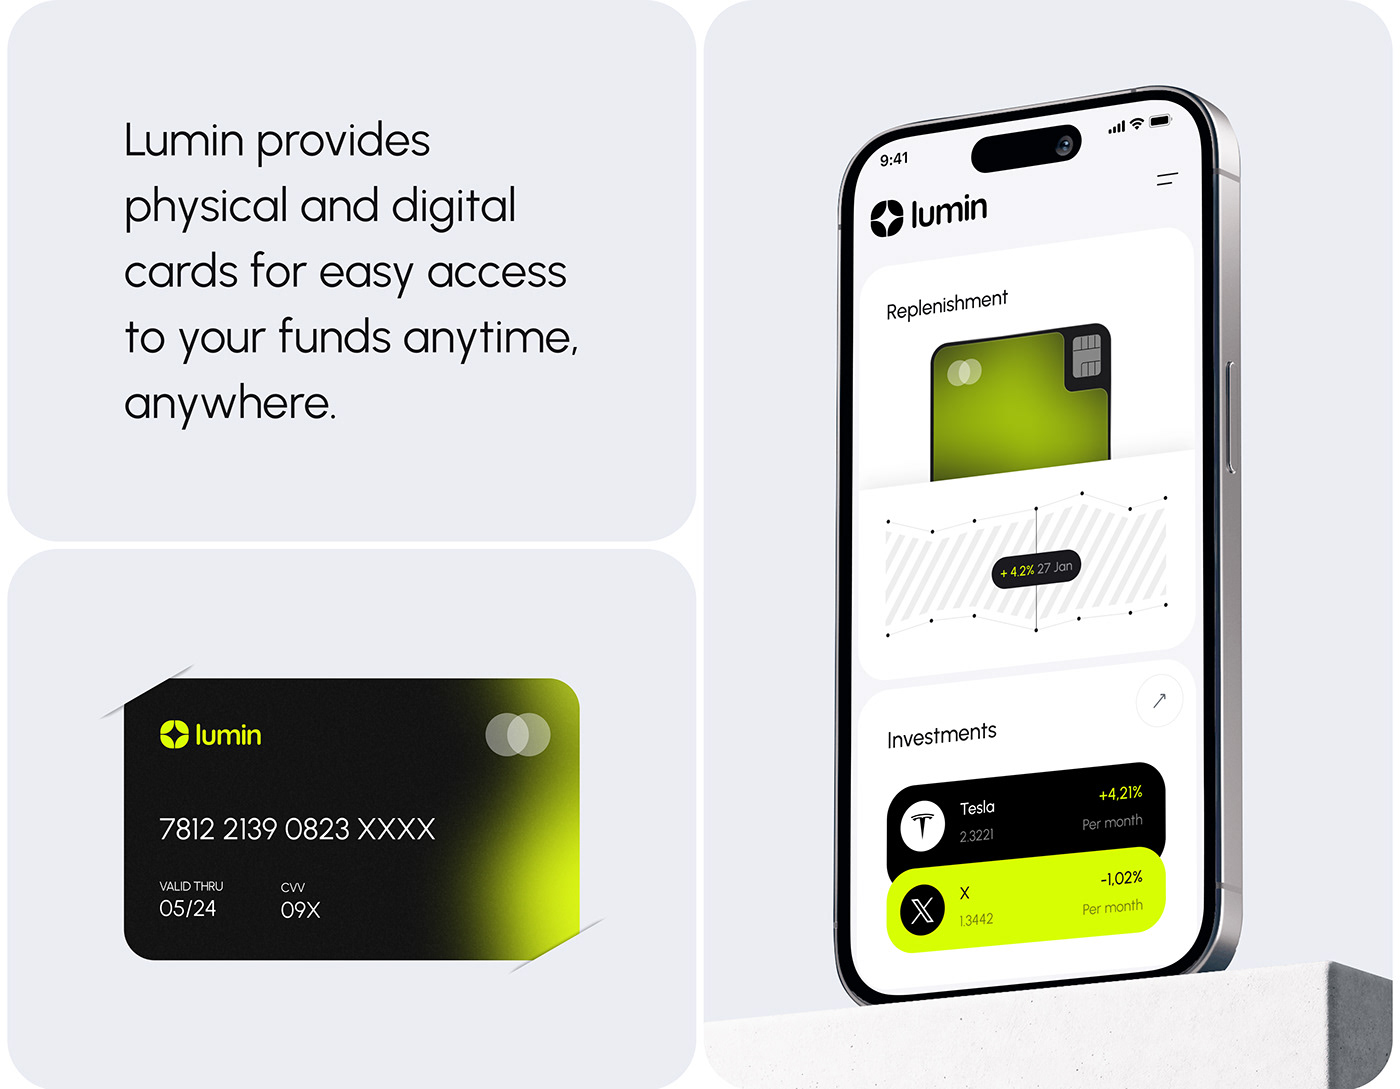 dashboard SAAS finance ux UI design online banking Mobile app app design app